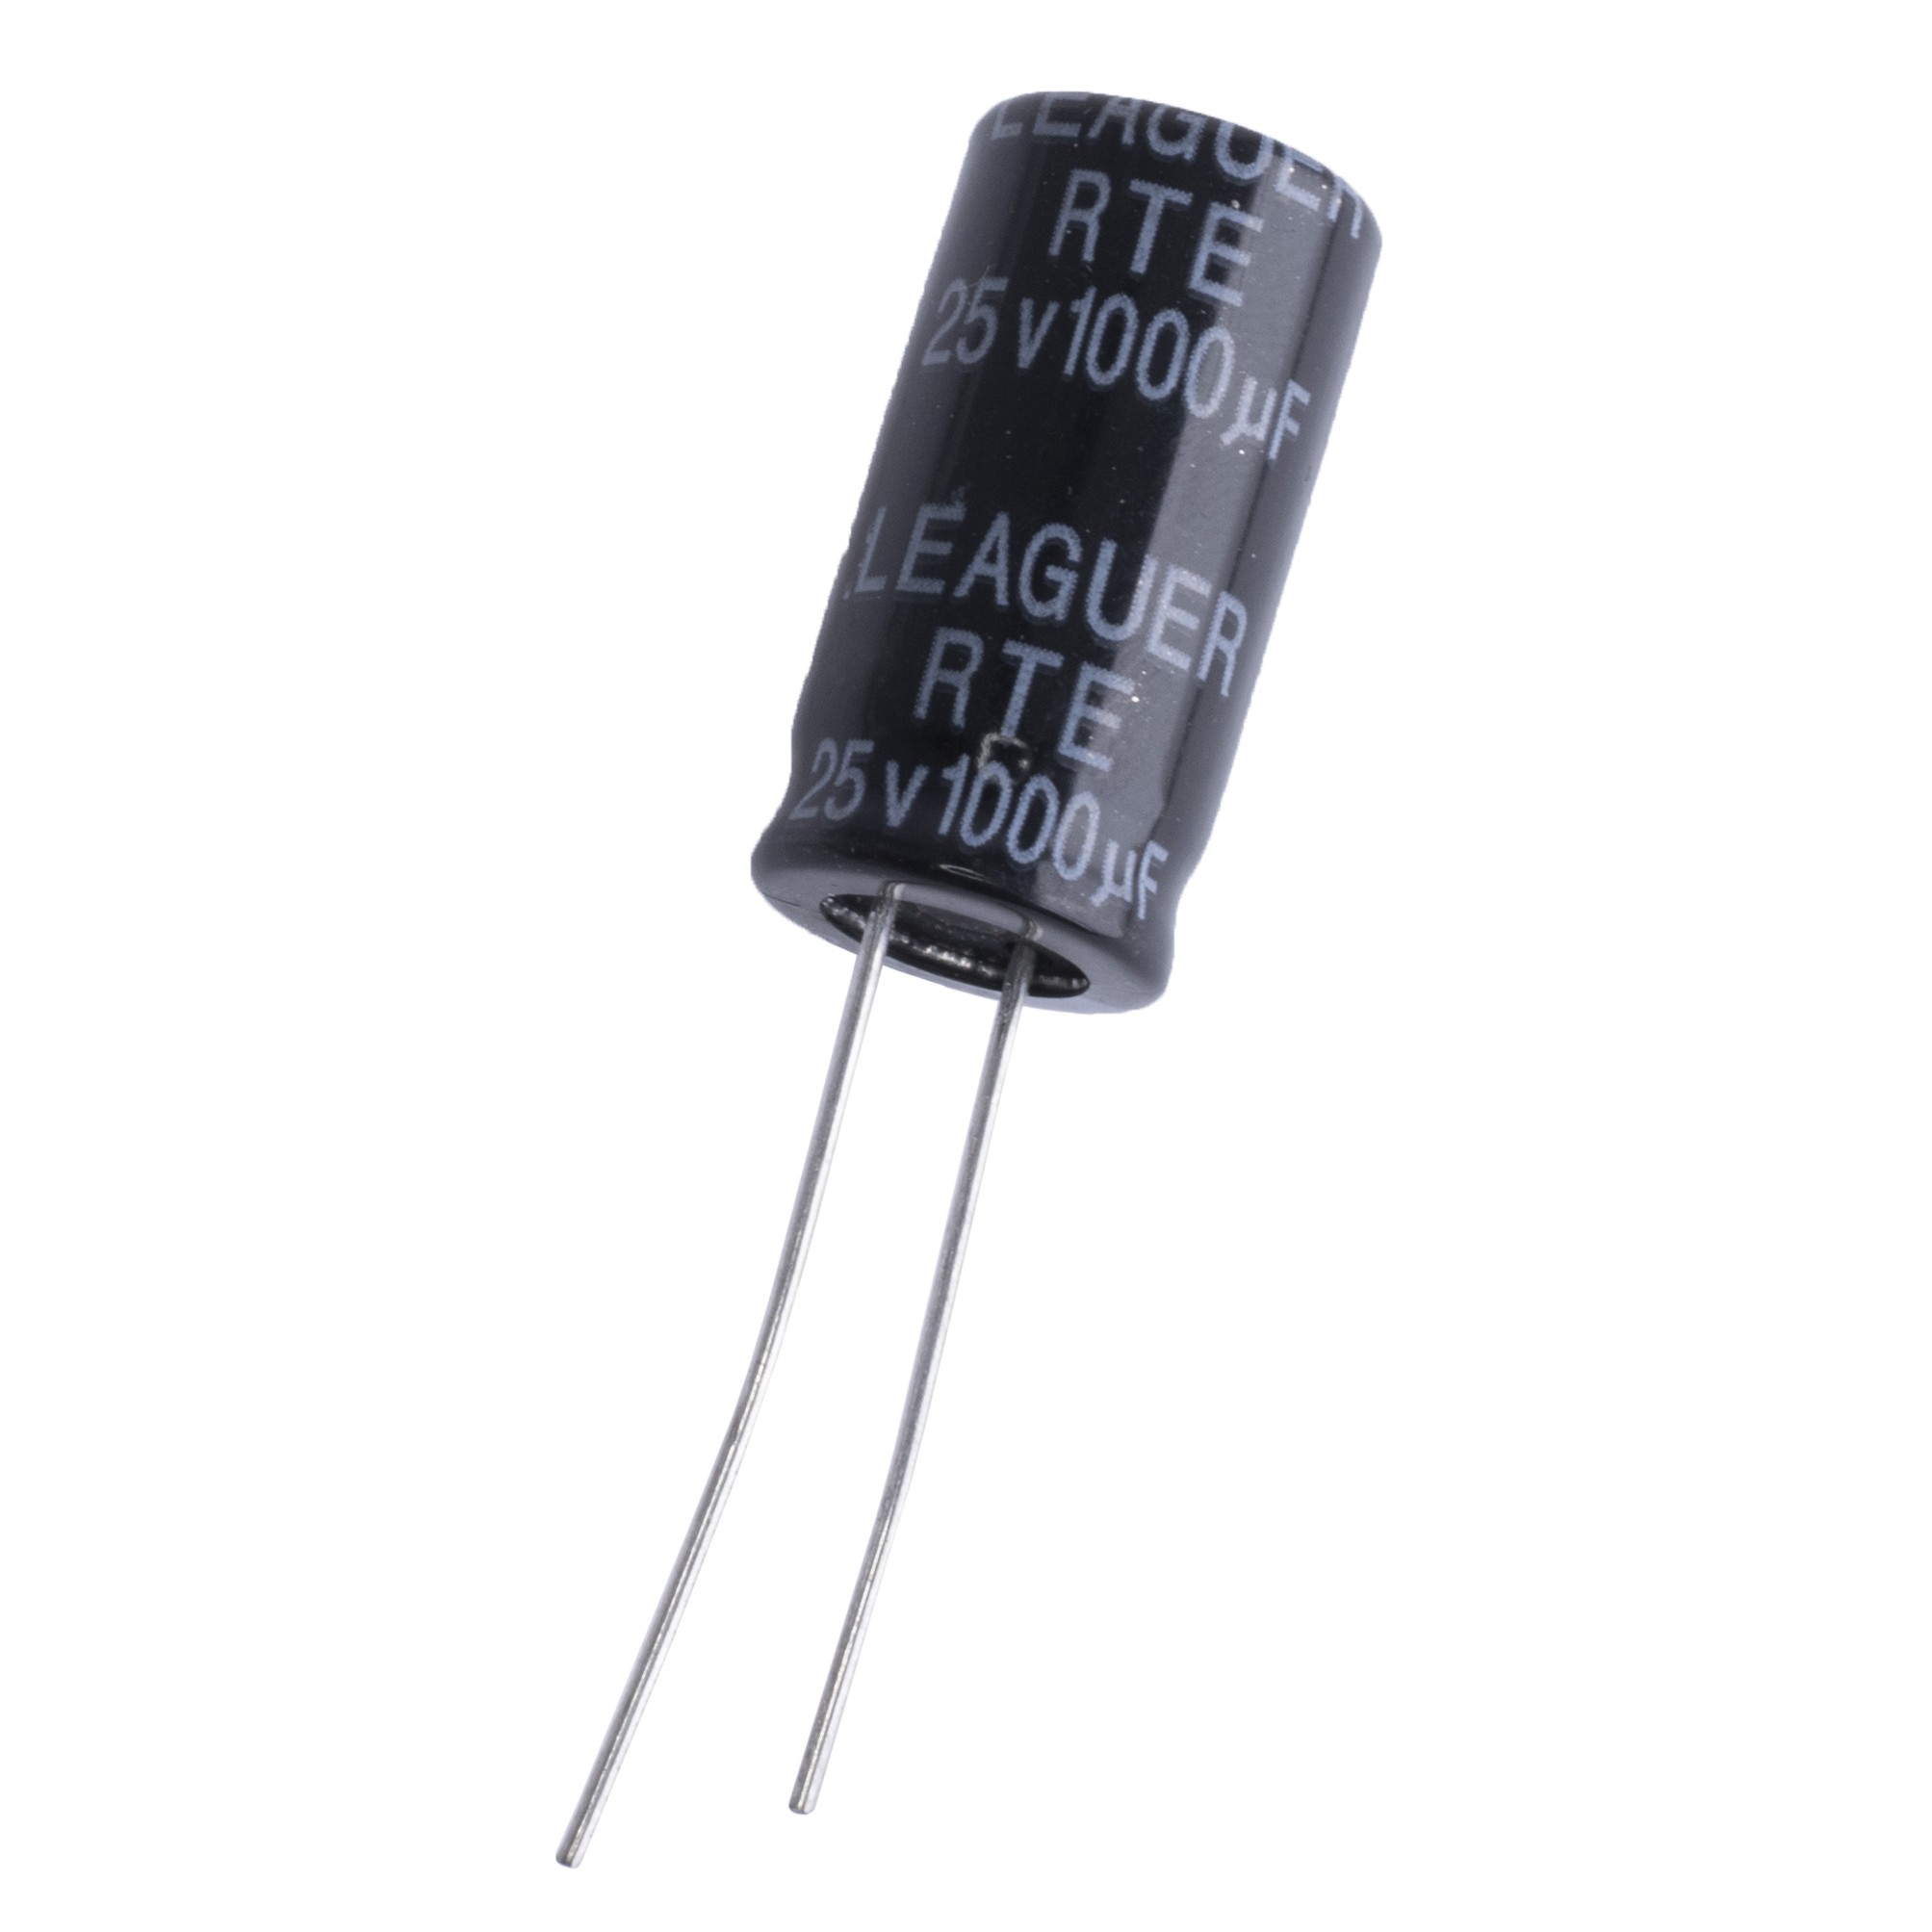 1000uF 25V RTE 10x20mm (low esr) (RTE1E102M1020F-LEAGUER) (електролітичний конденсатор низькоімпедансний)